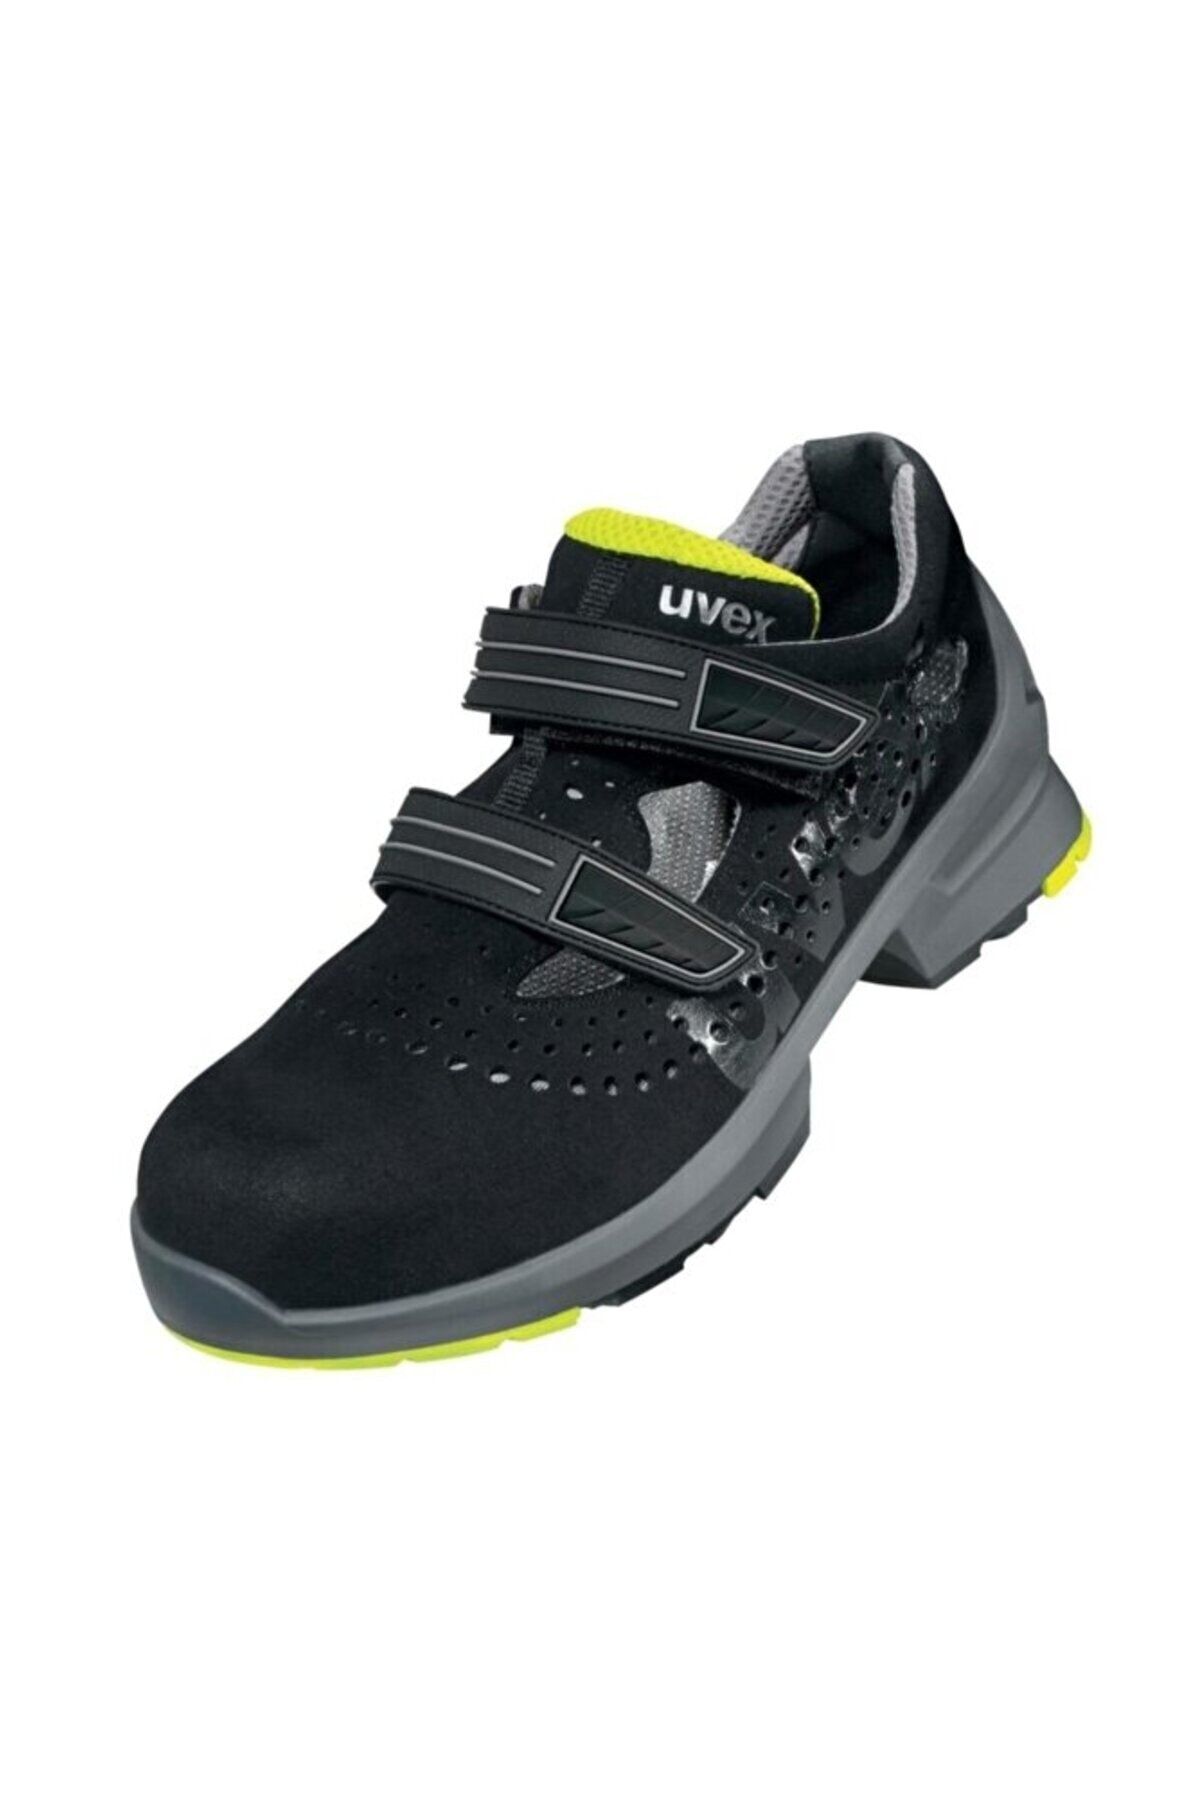 Uvex 1 8542 S1 Src Esd Sandalet Iş Ayakkabısı